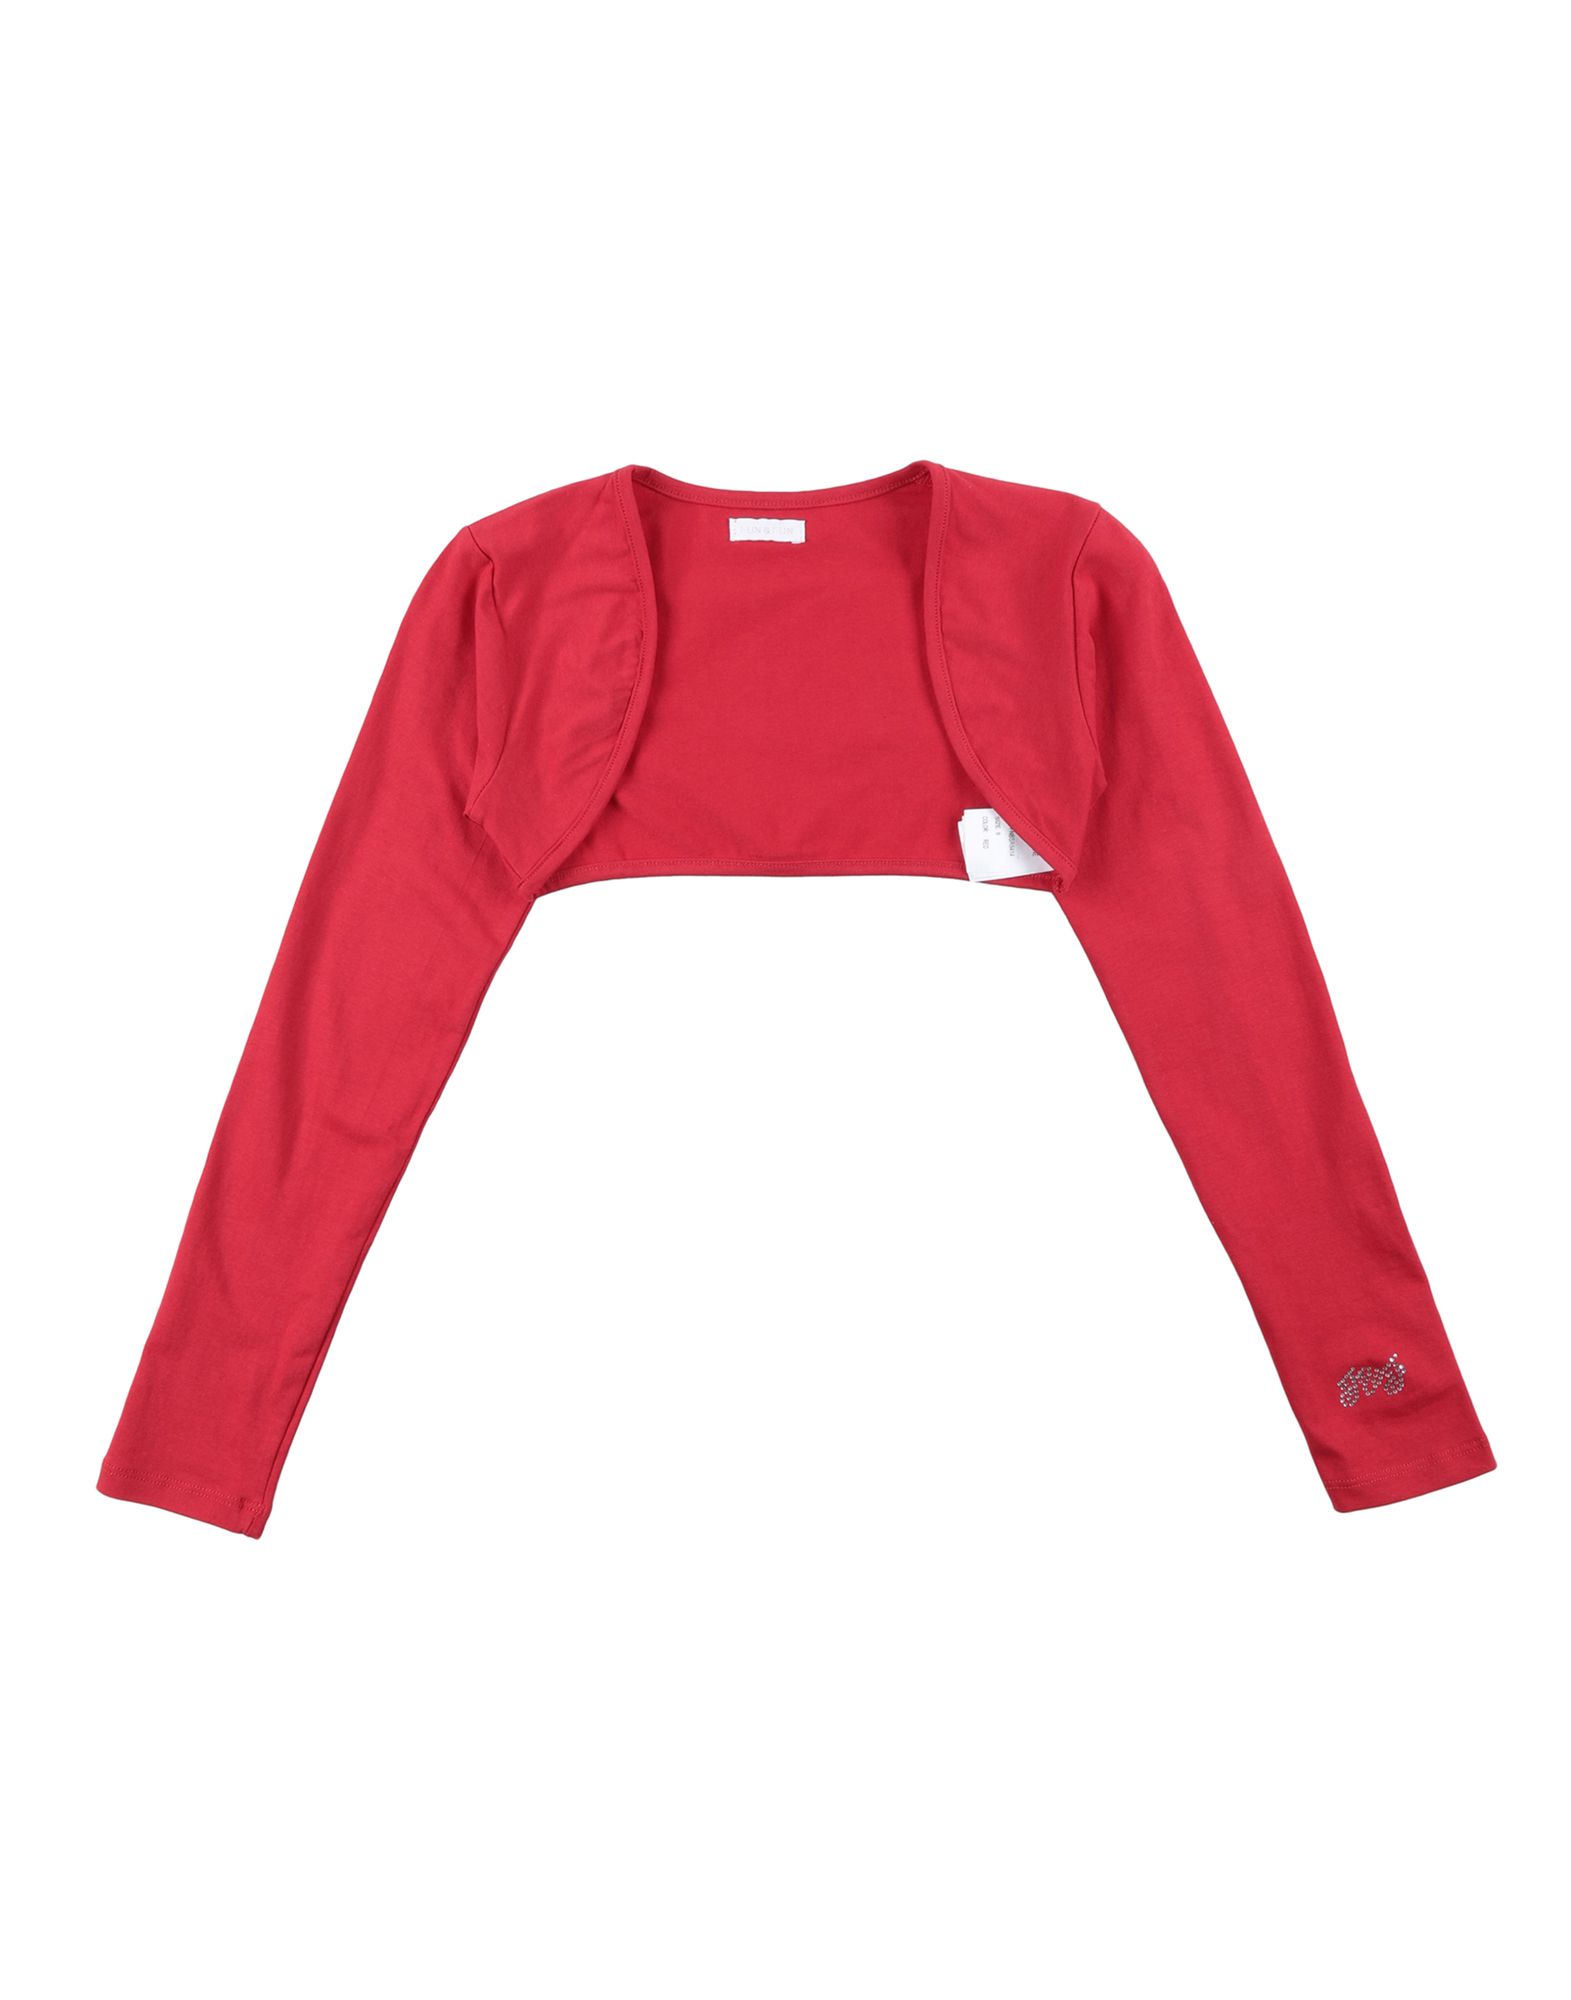 Shop Fun & Fun Toddler Girl Wrap Cardigans Red Size 7 Cotton, Elastane